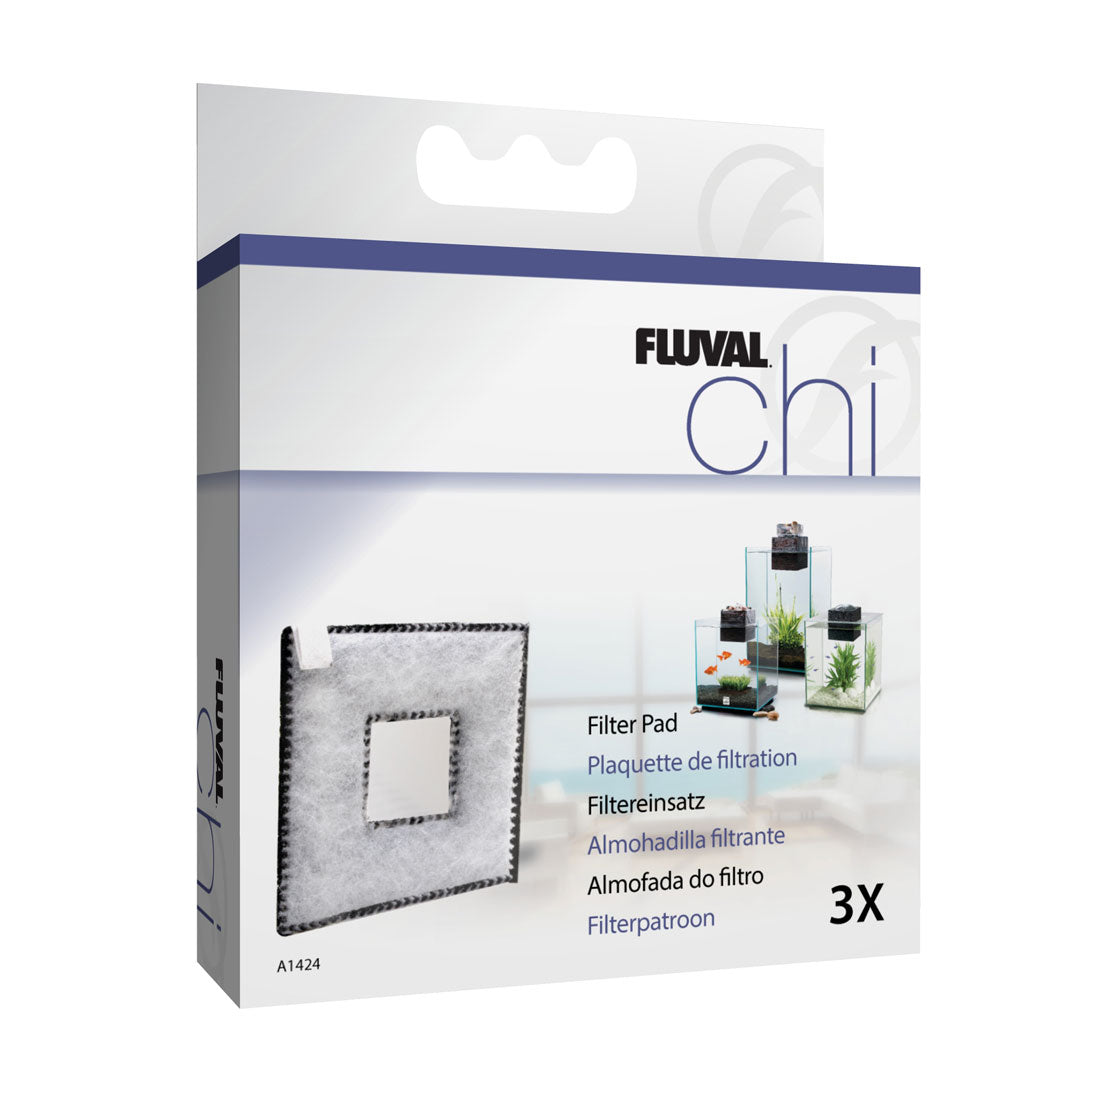 Fluval CHI Filter Pad